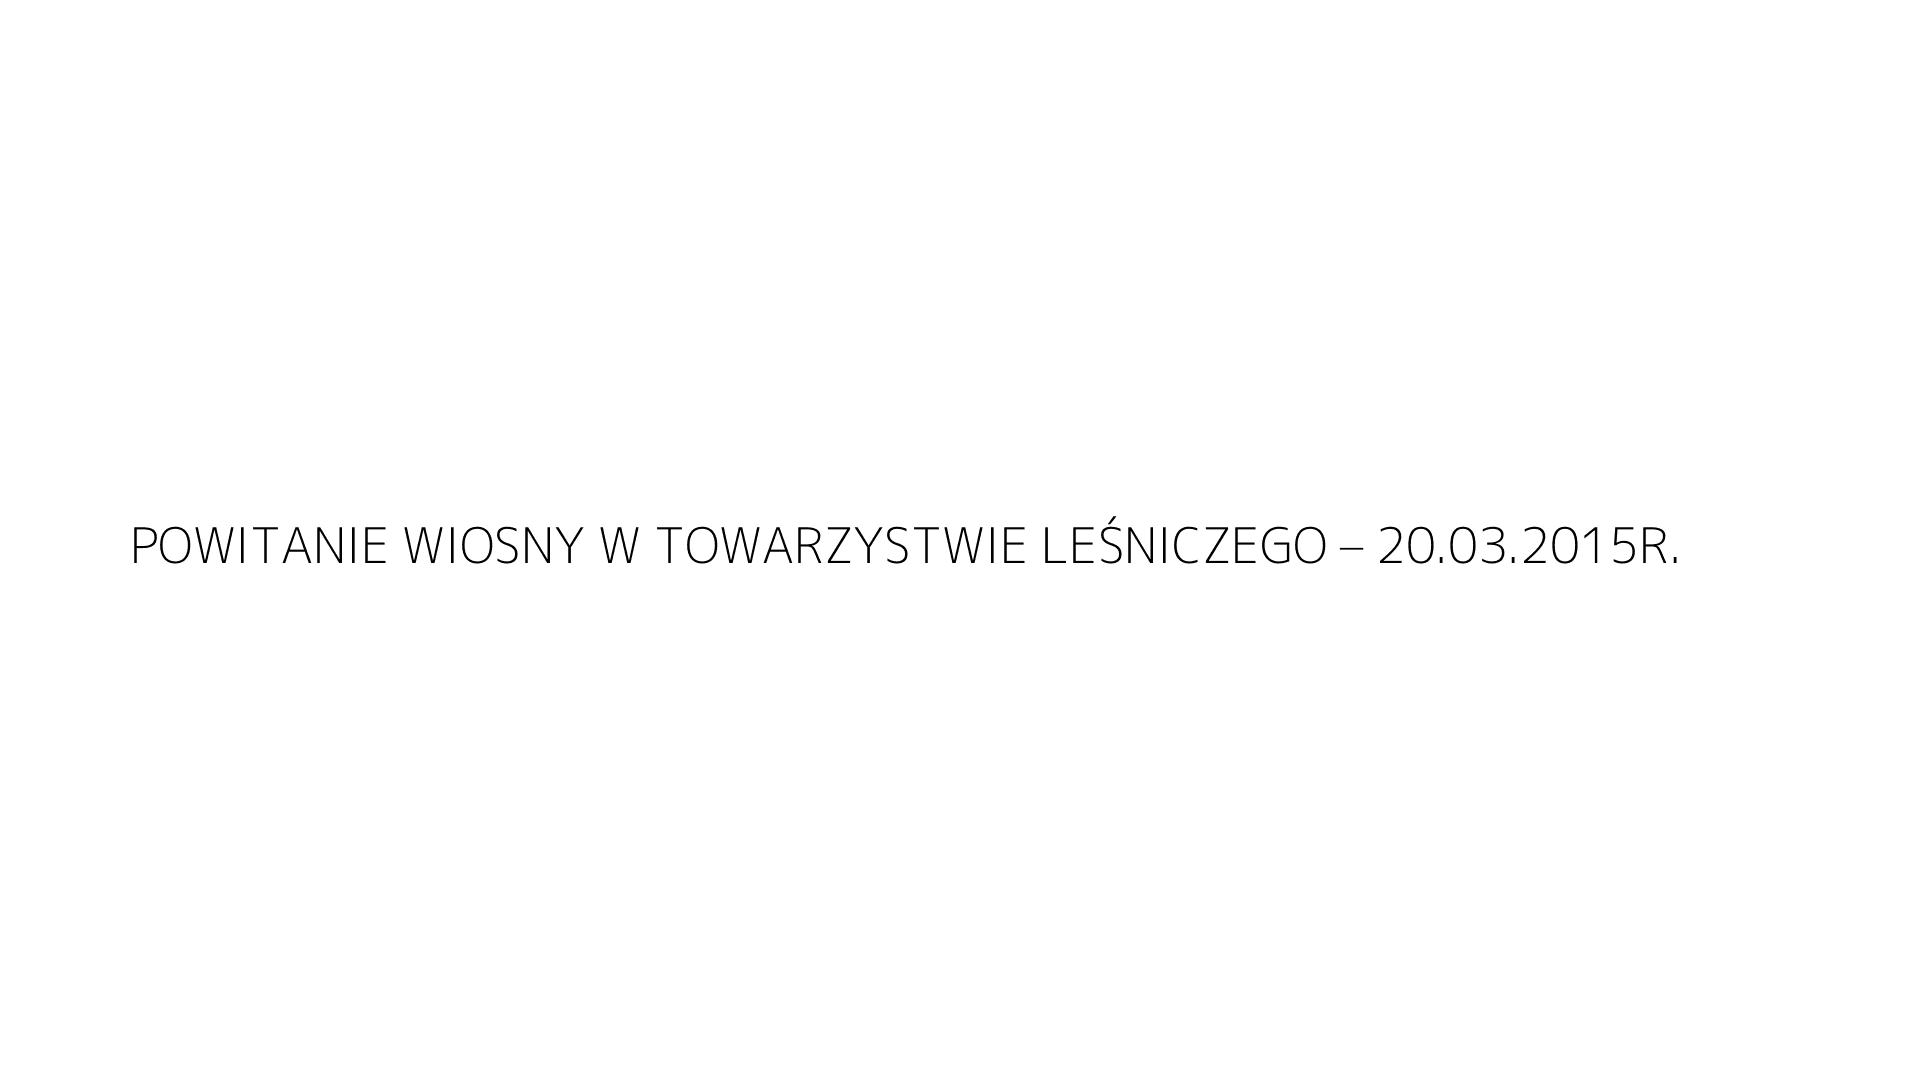 POWITANIE WIOSNY W TOWARZYSTWIE LEŚNICZEGO – 20.03.2015R.